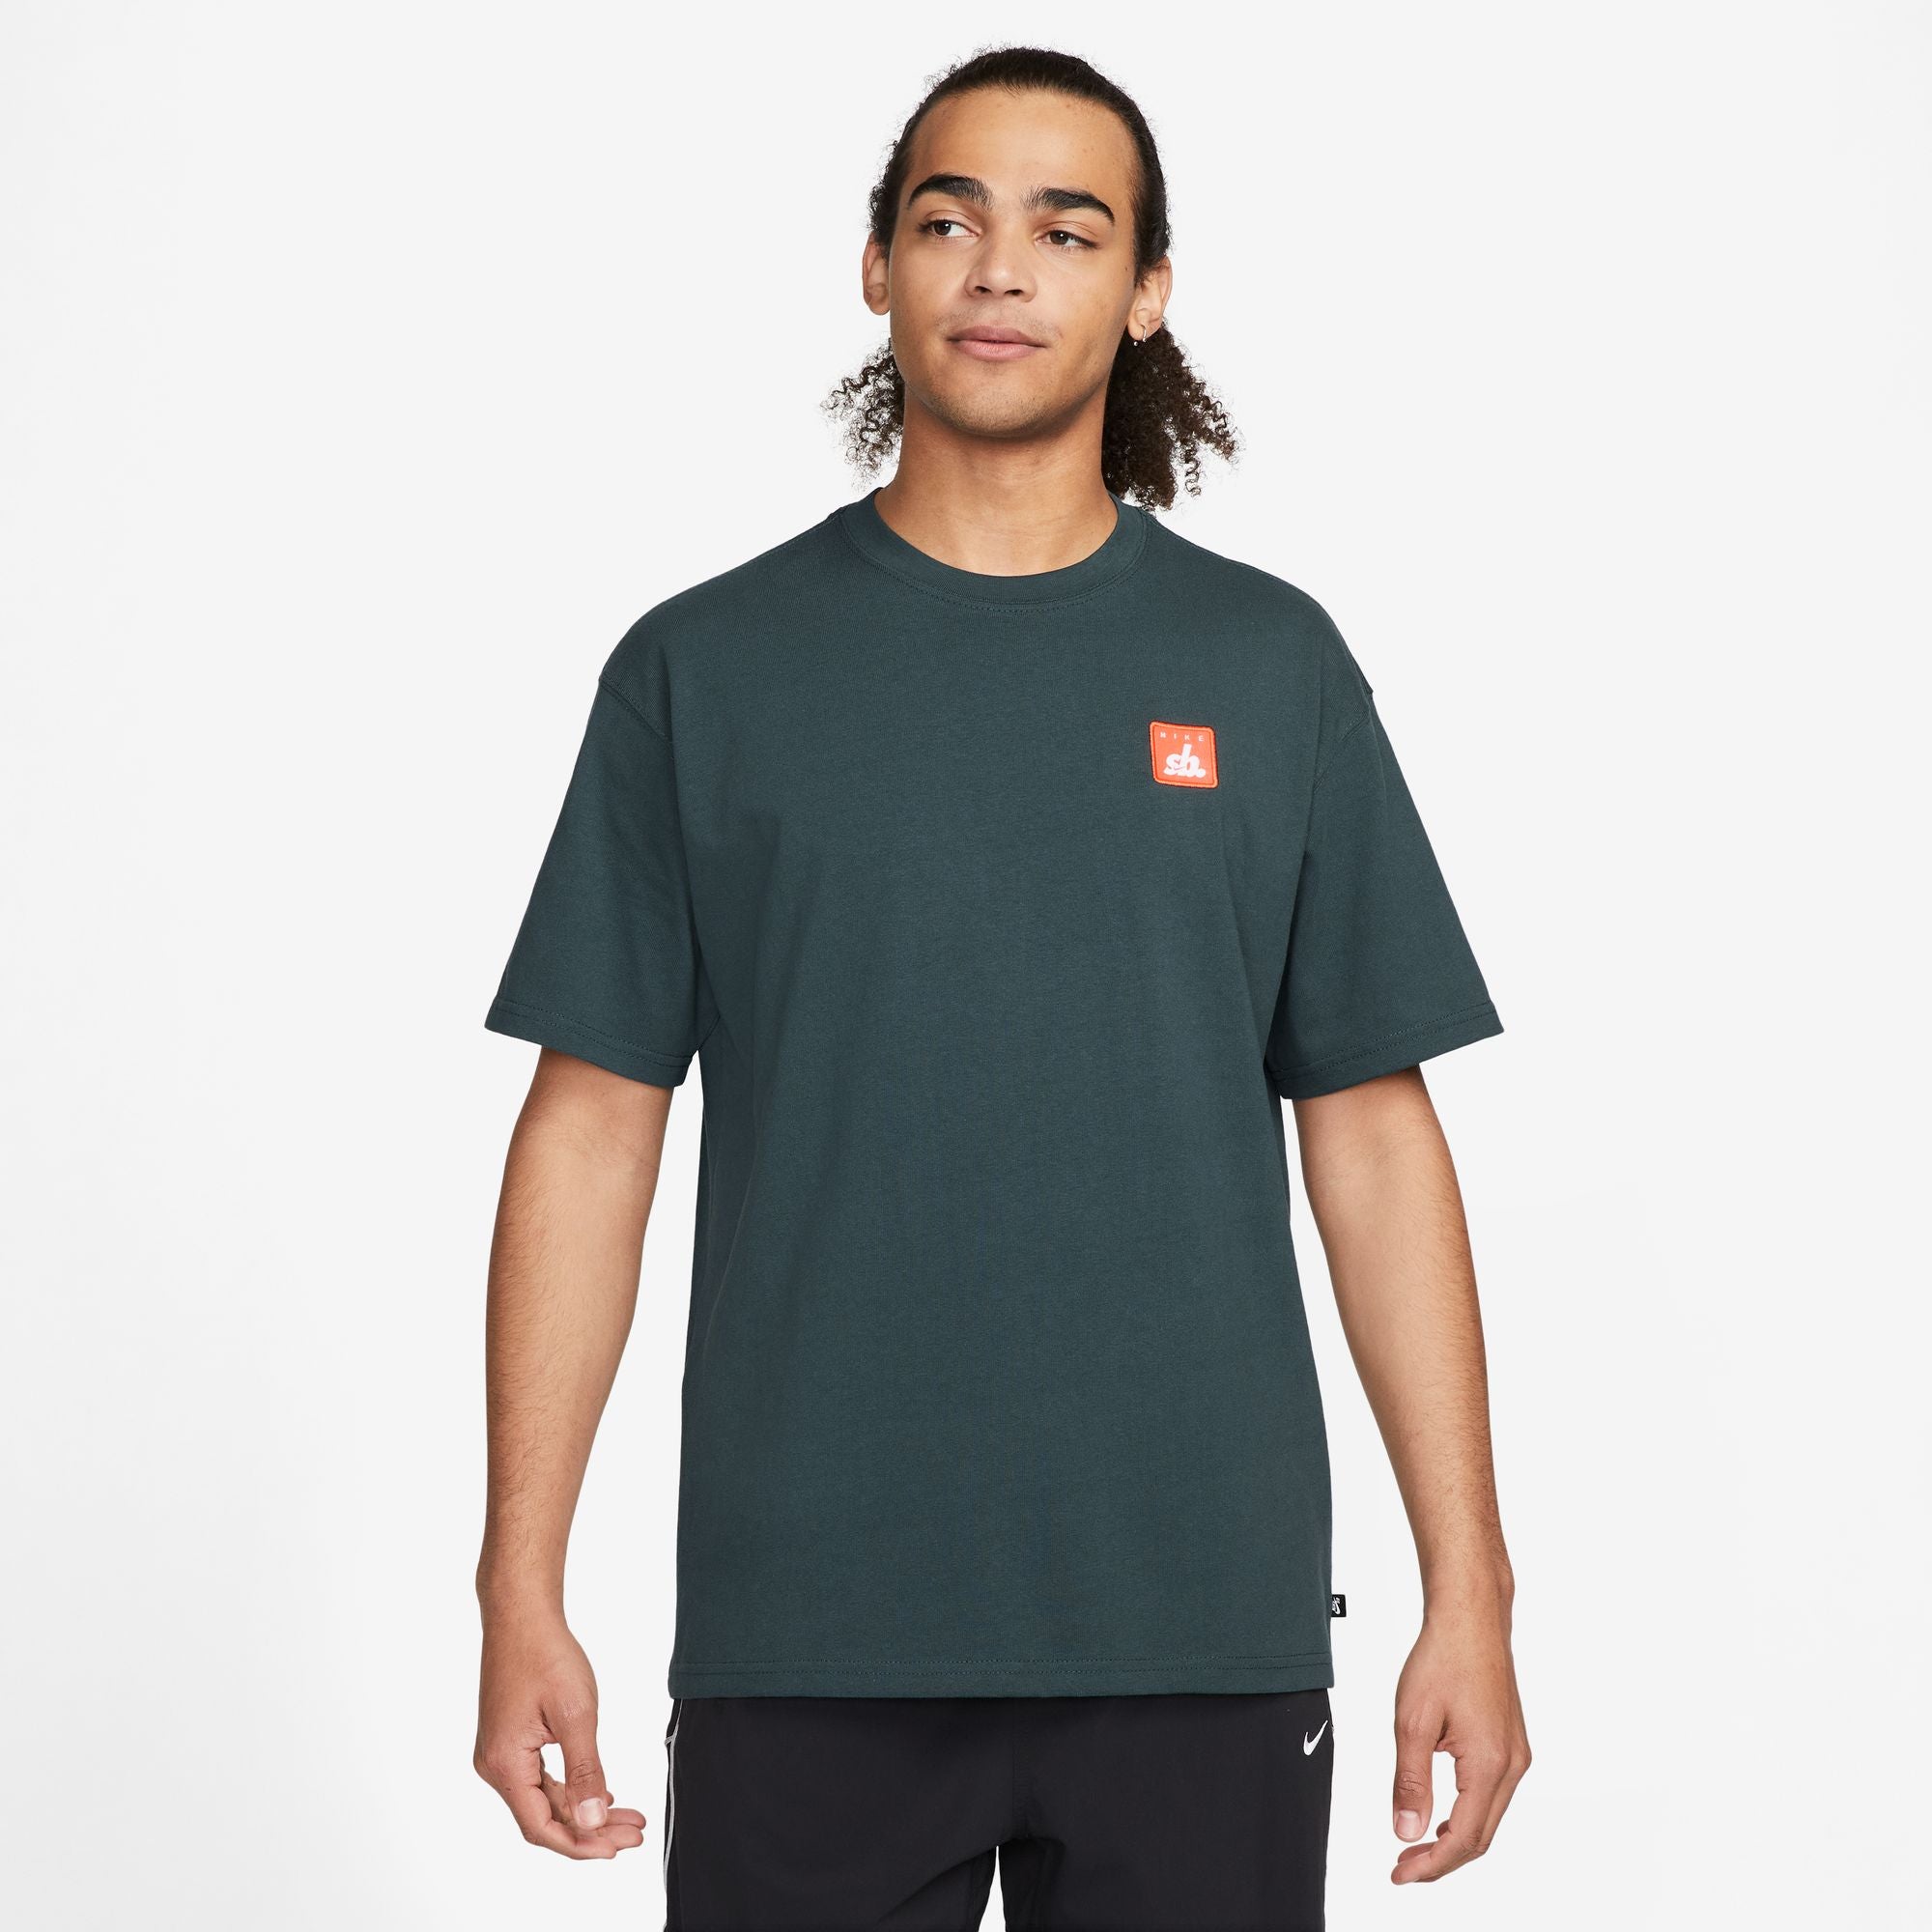 Nike Skate T-Shirt